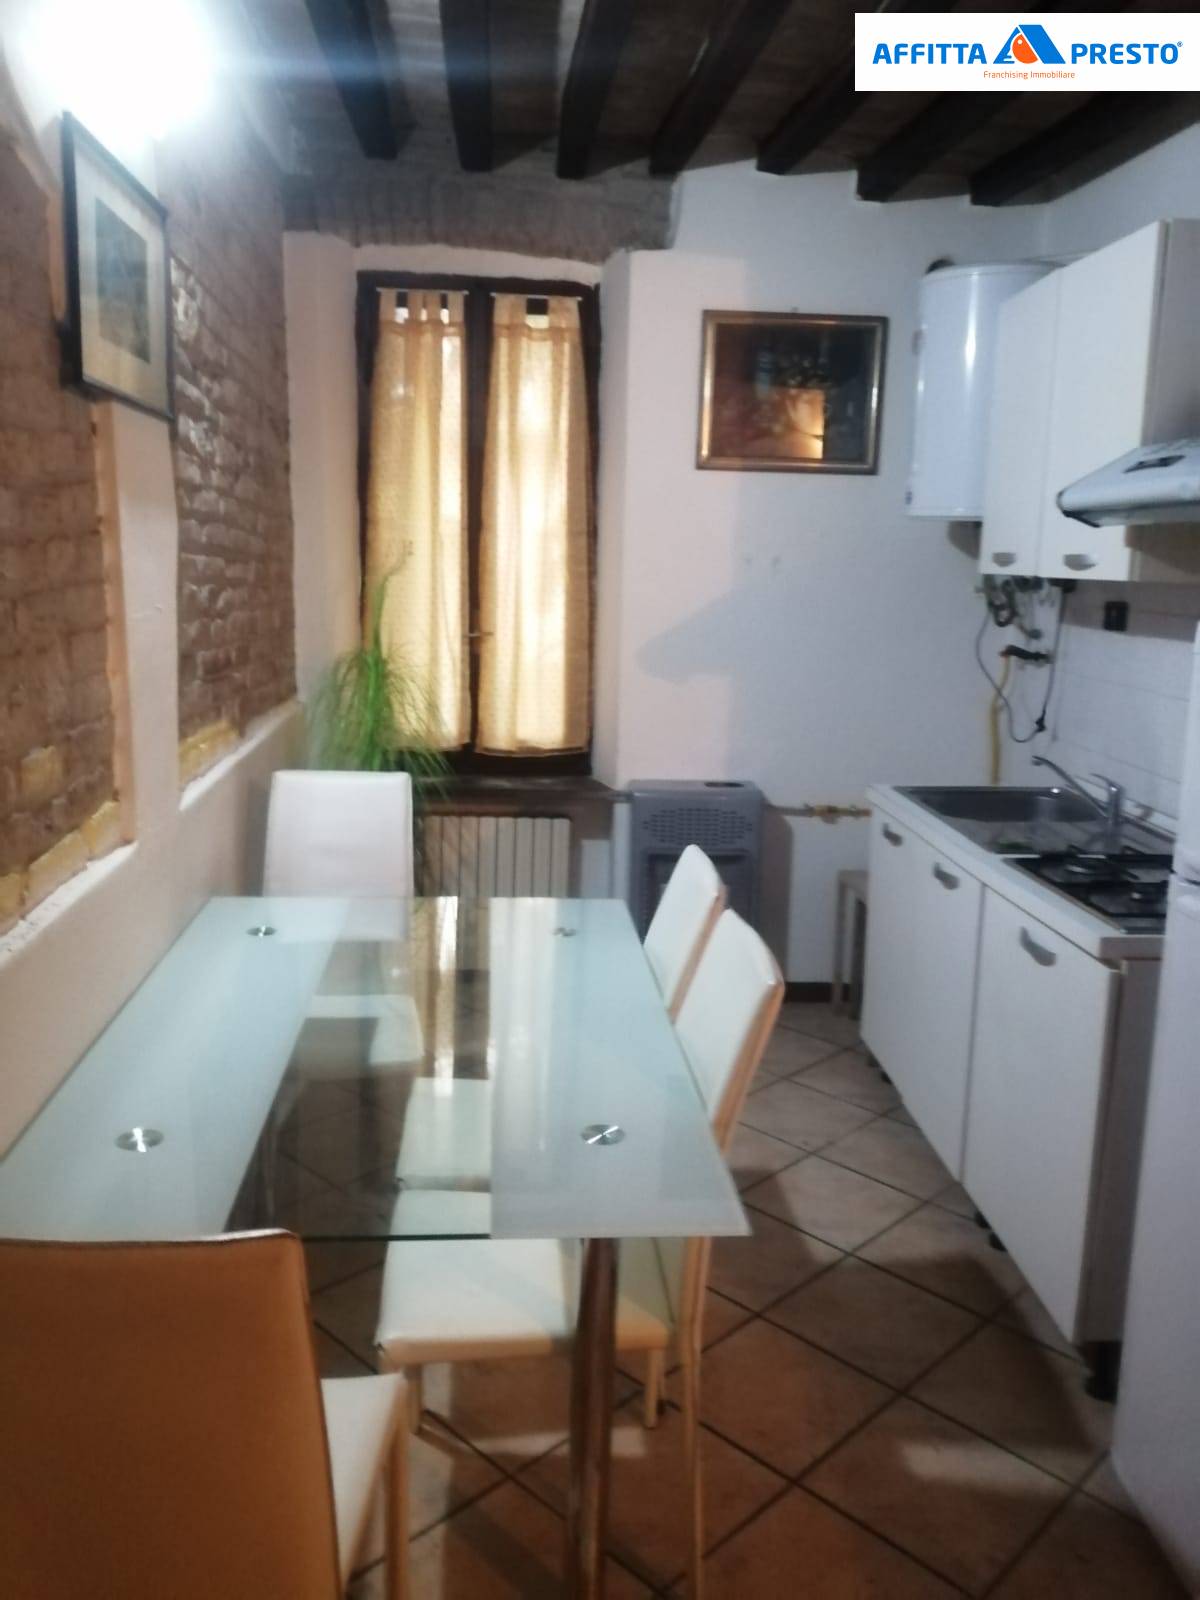 Appartamento in affitto a Parma, 2 locali, zona Località: Centrostorico, prezzo € 900 | PortaleAgenzieImmobiliari.it